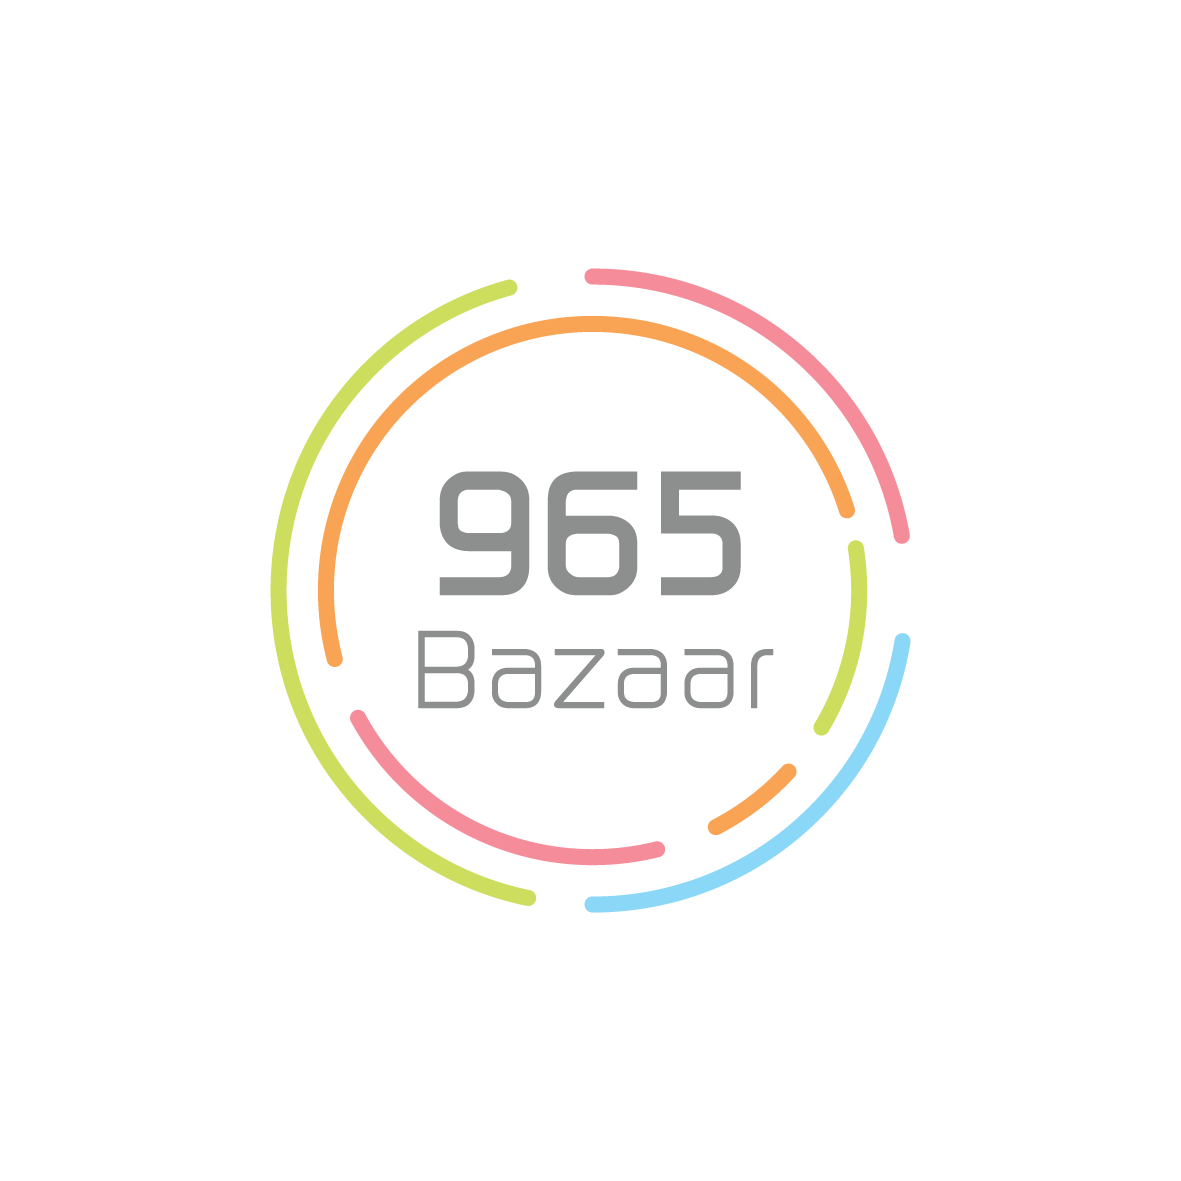 965bazaar 965 bazaar 965 bazaar logo pixeldrop Pixel Drop